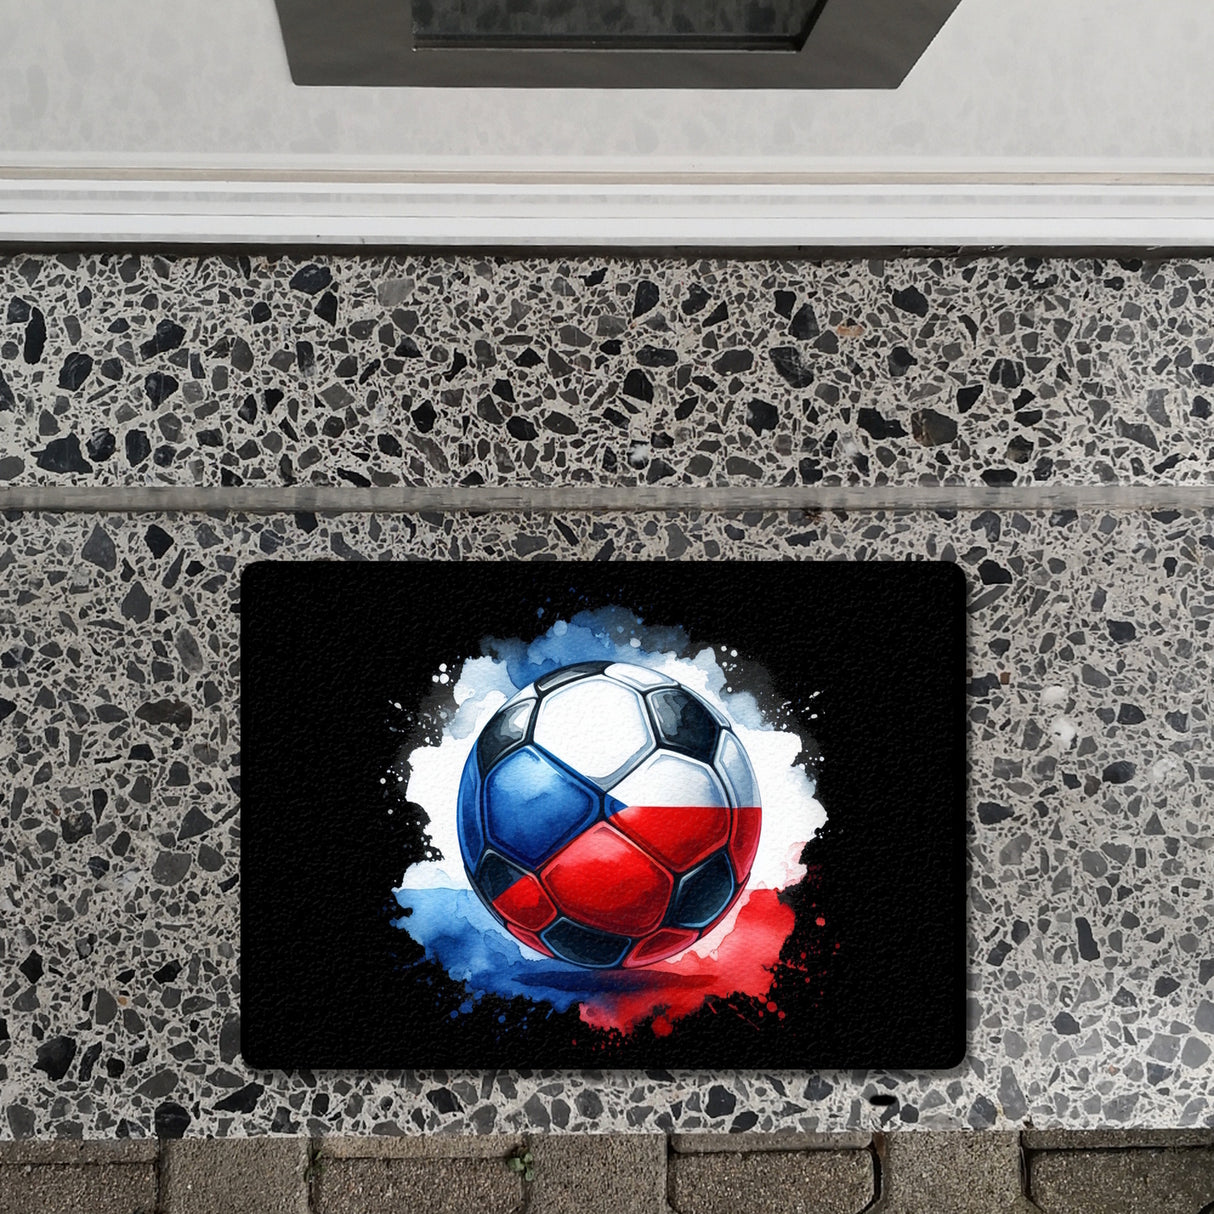 Fußball Tschechien Flagge Fußmatte in 35x50 cm ohne Rand